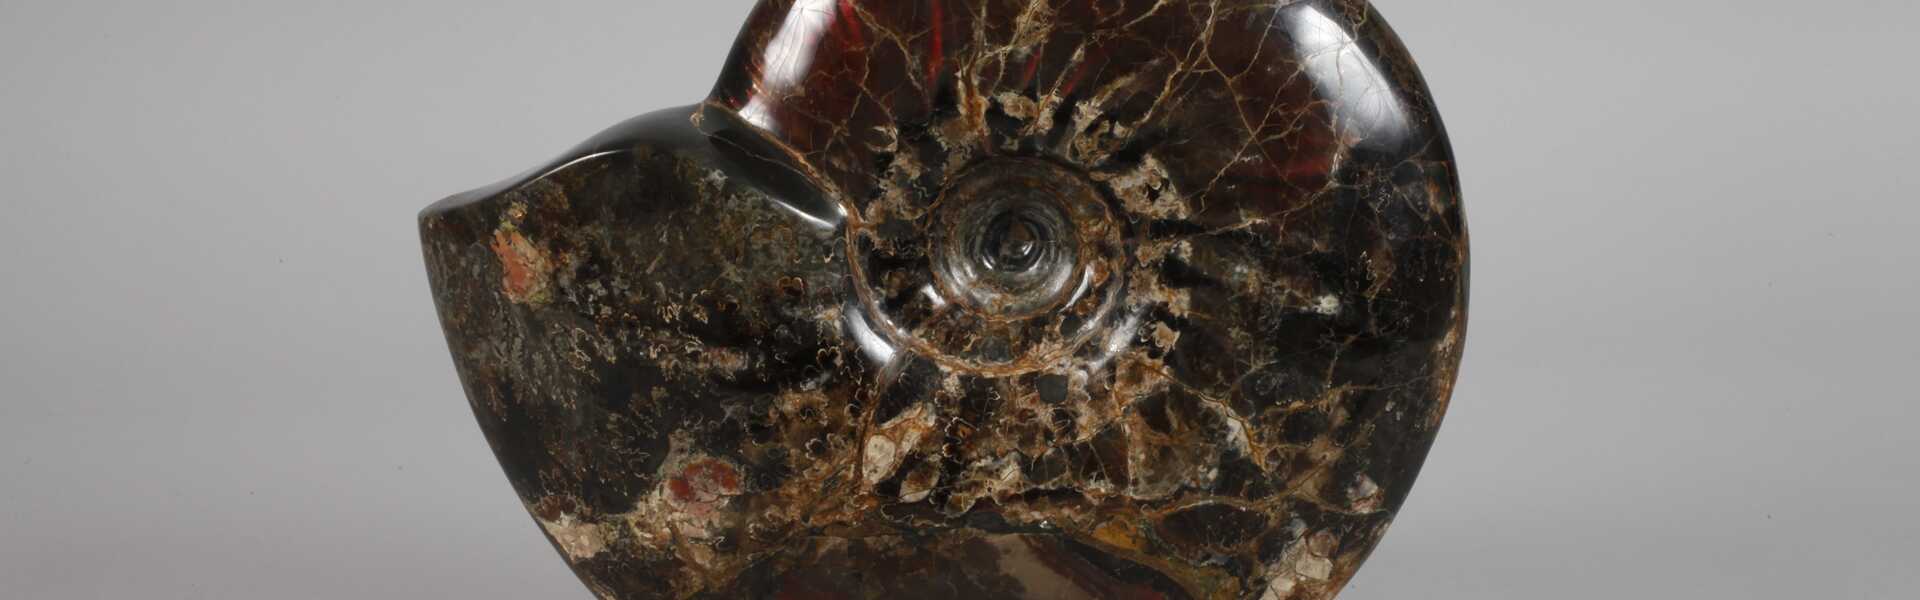 Prächtiger opalisierter Ammonit